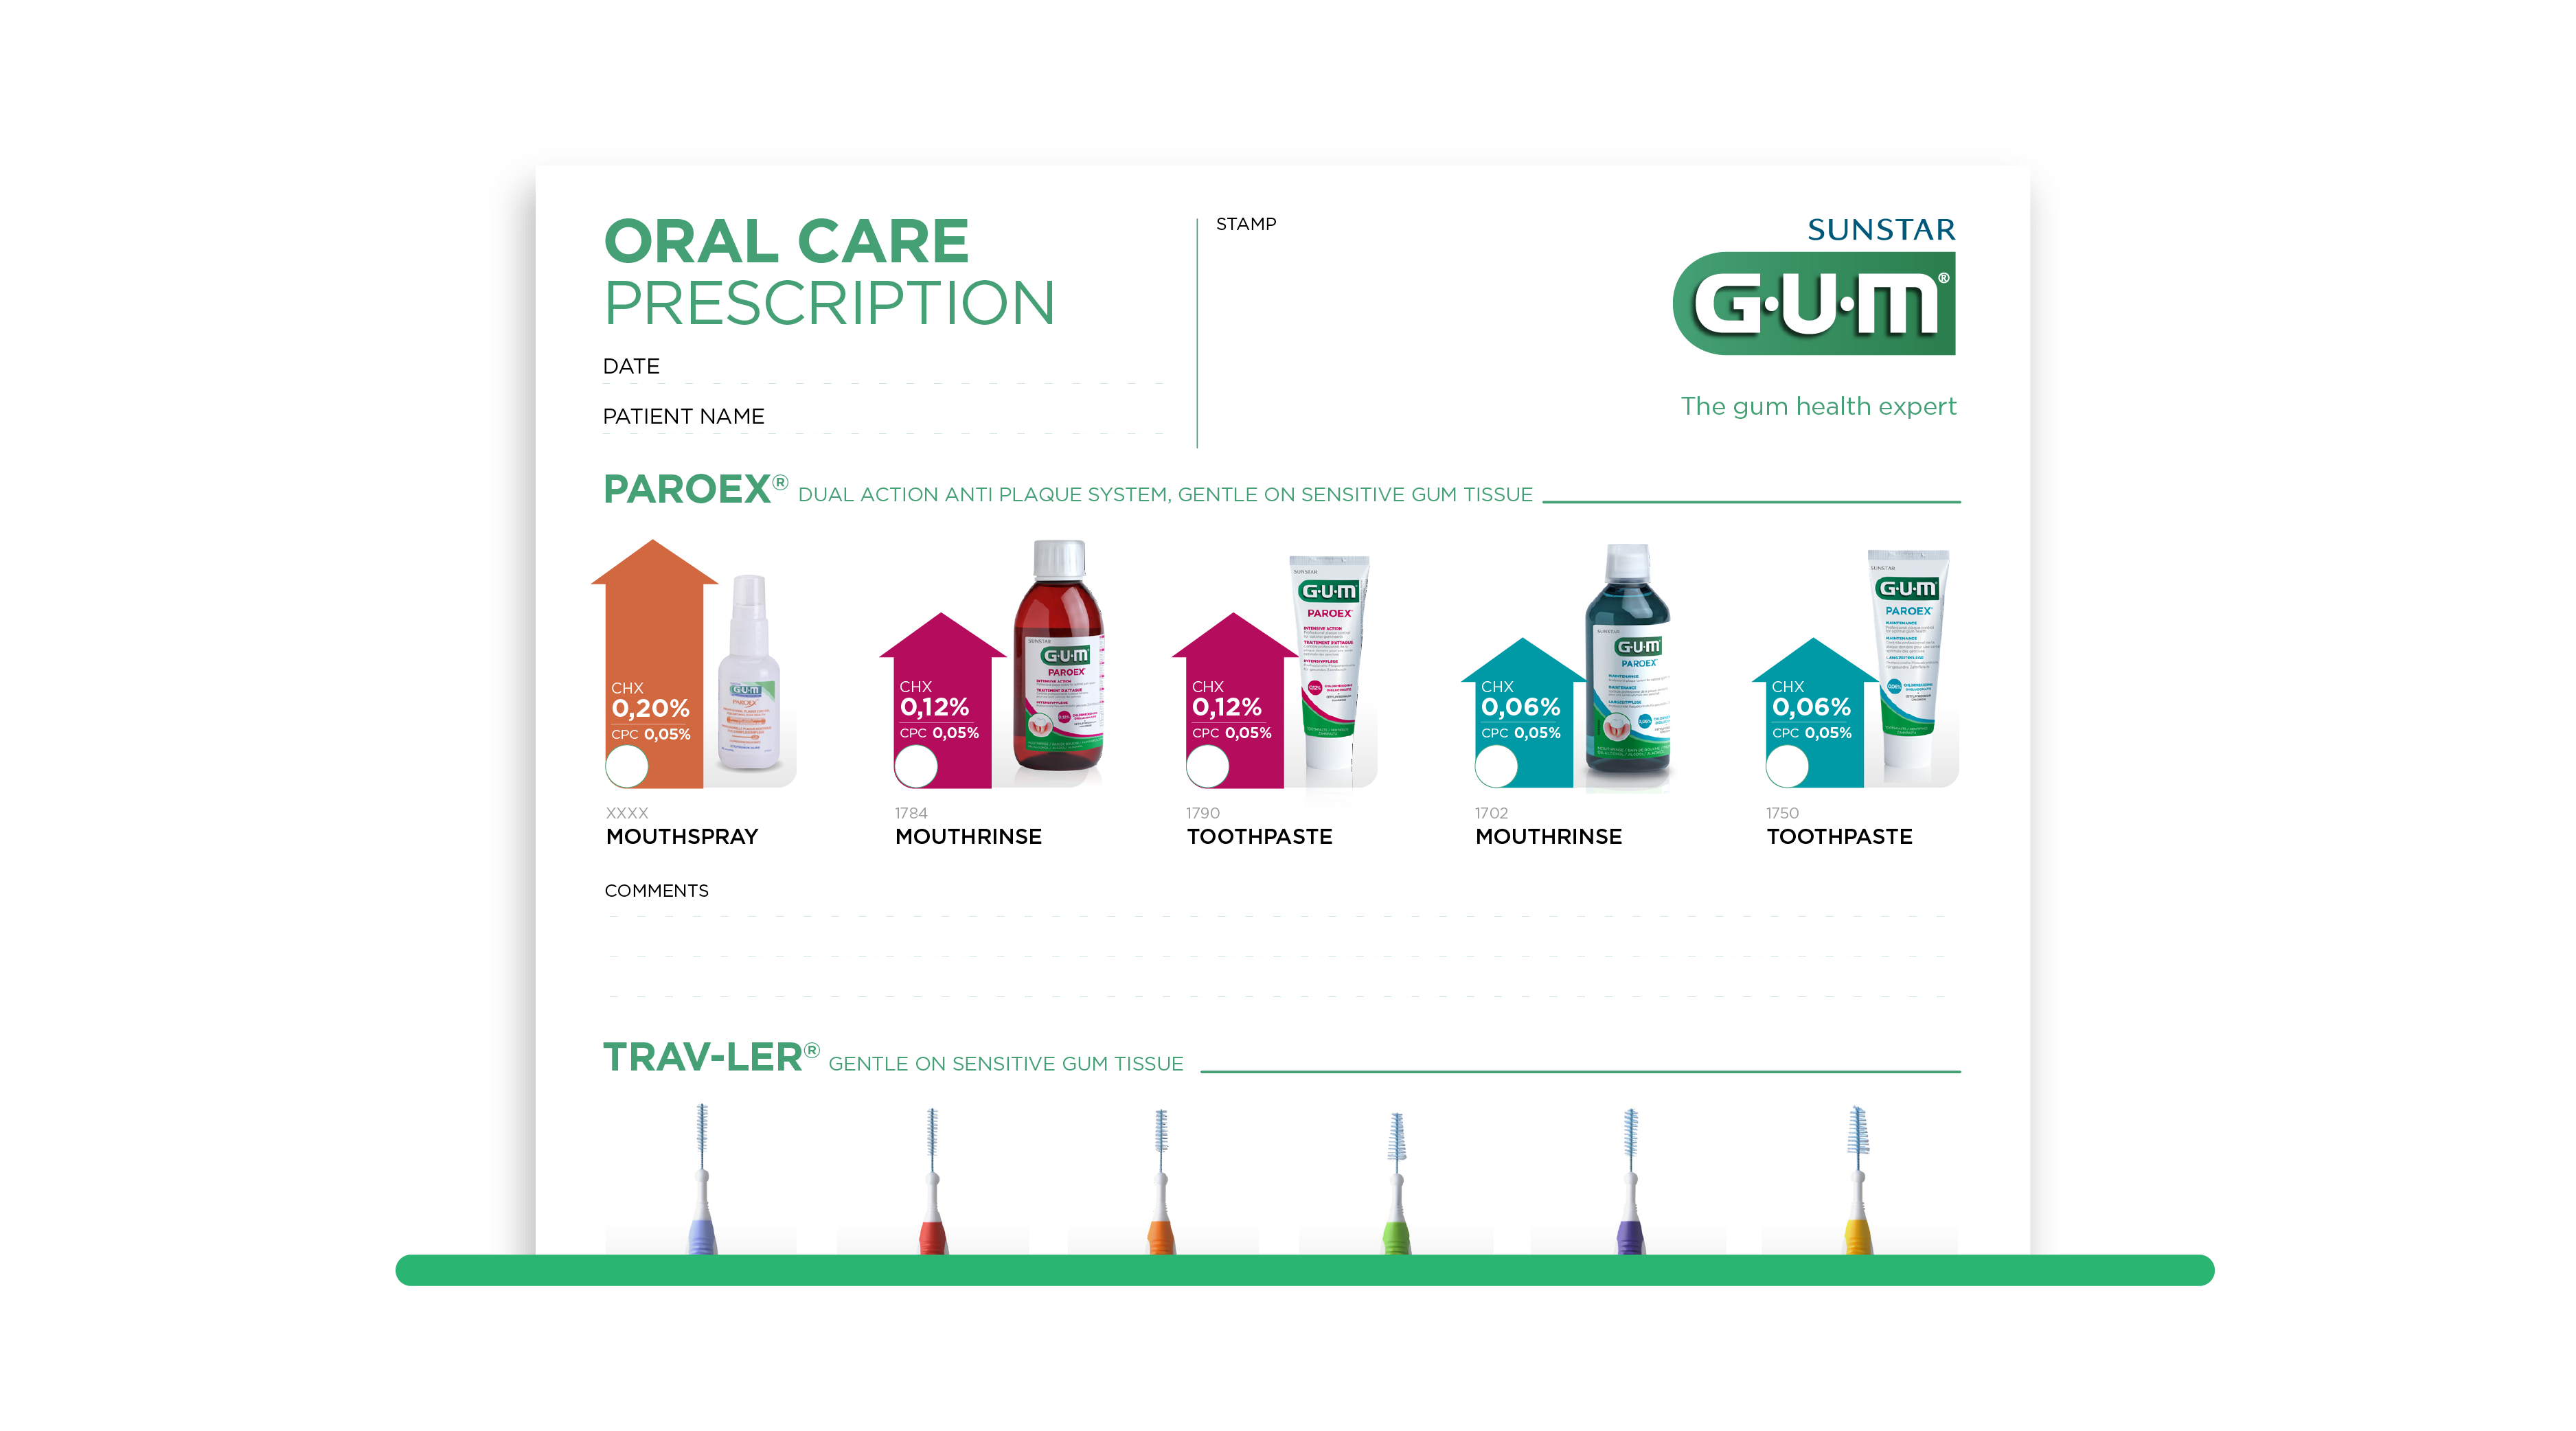 Oral care prescription